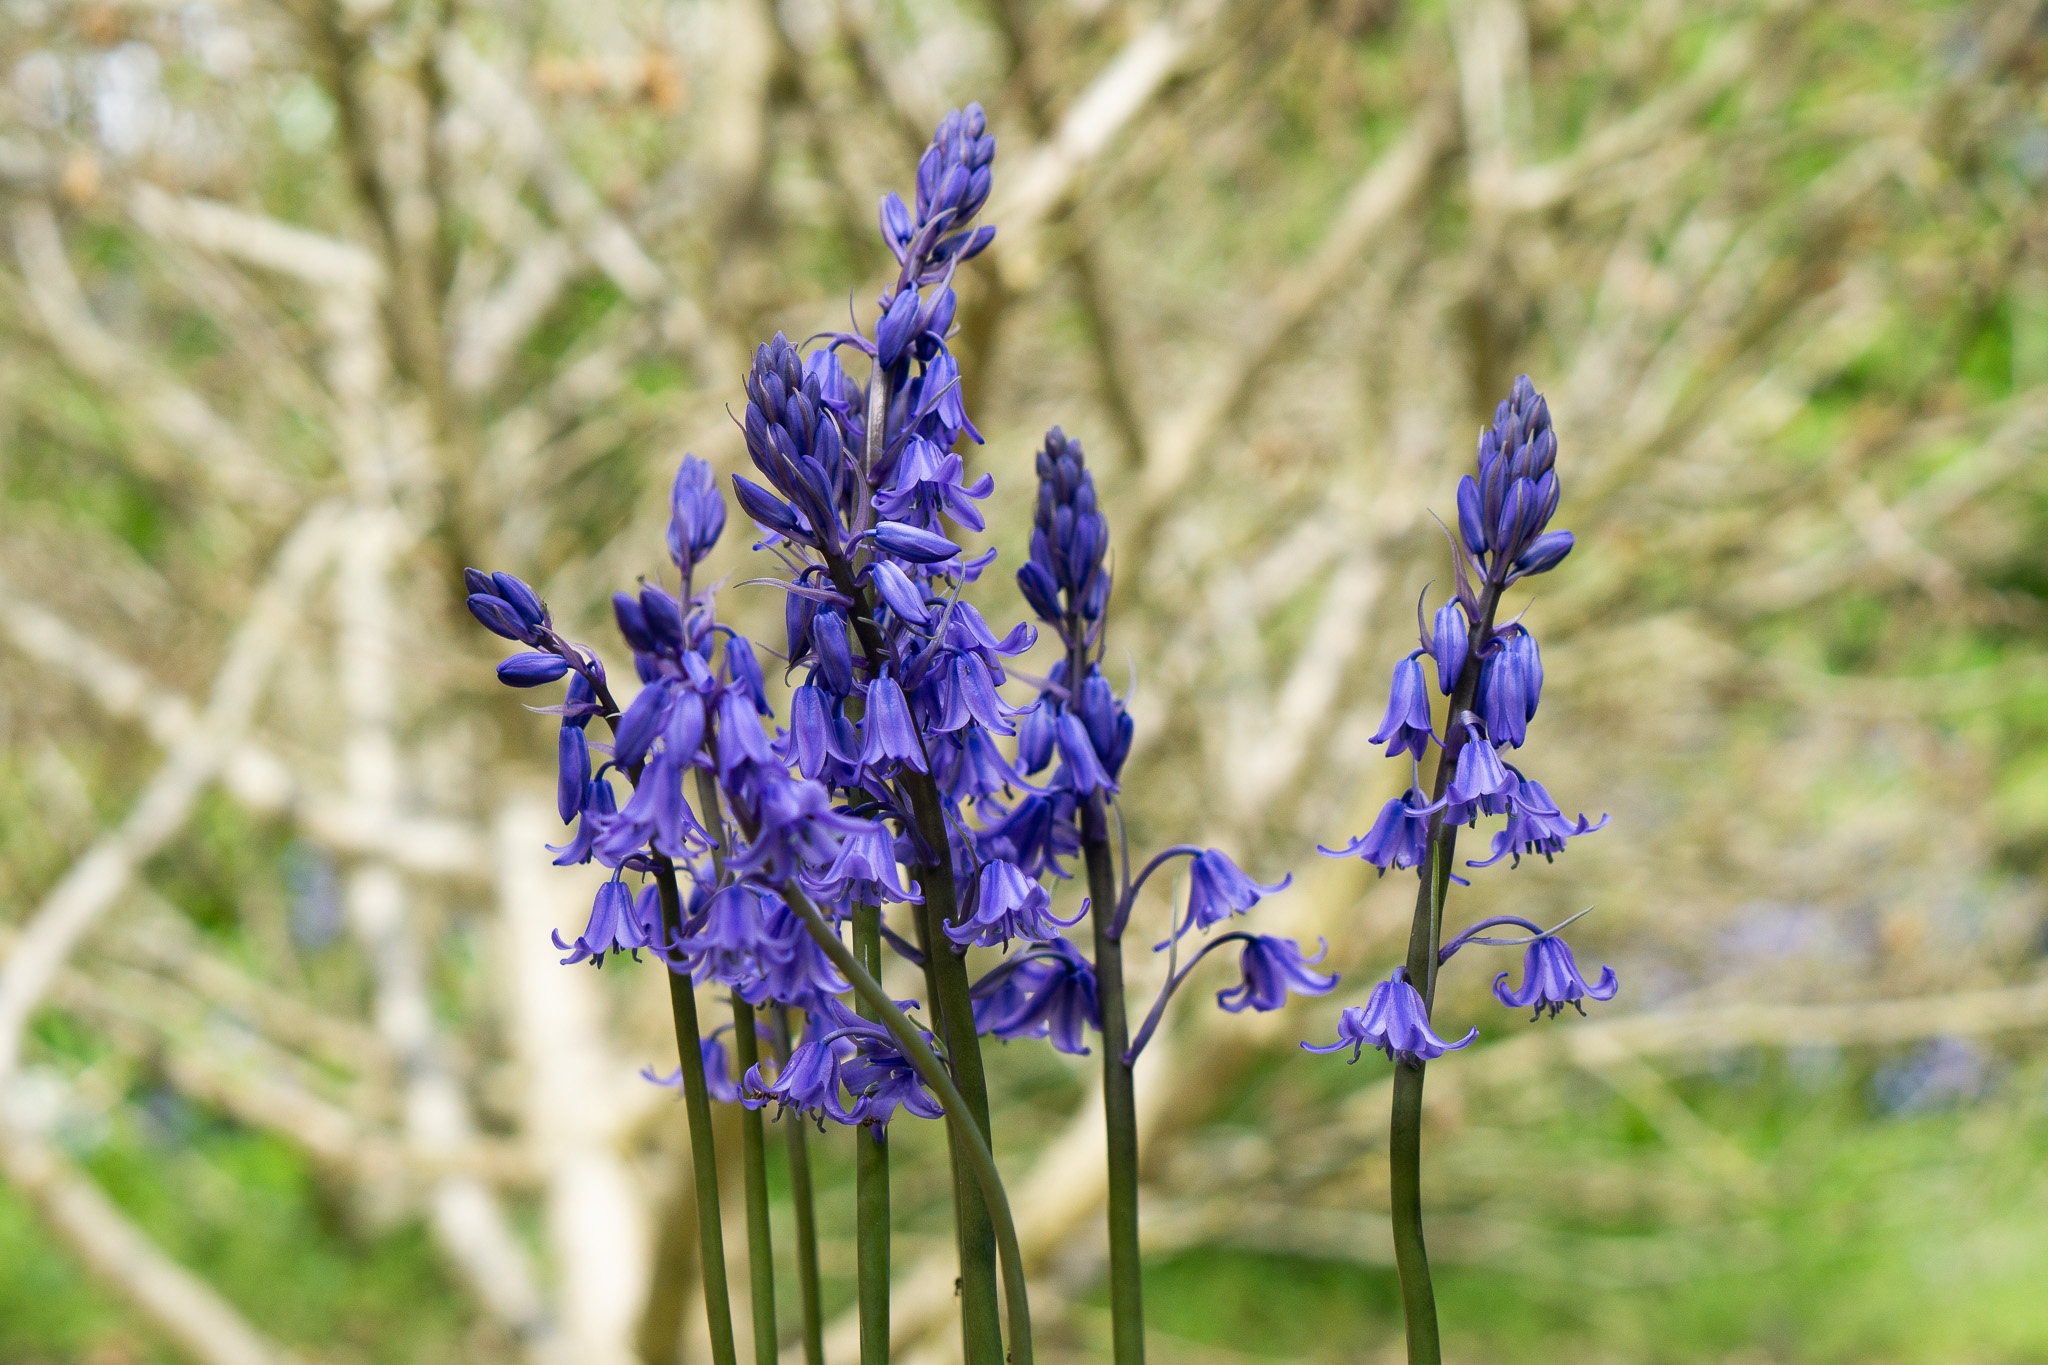 Spanish bluebells garden flower